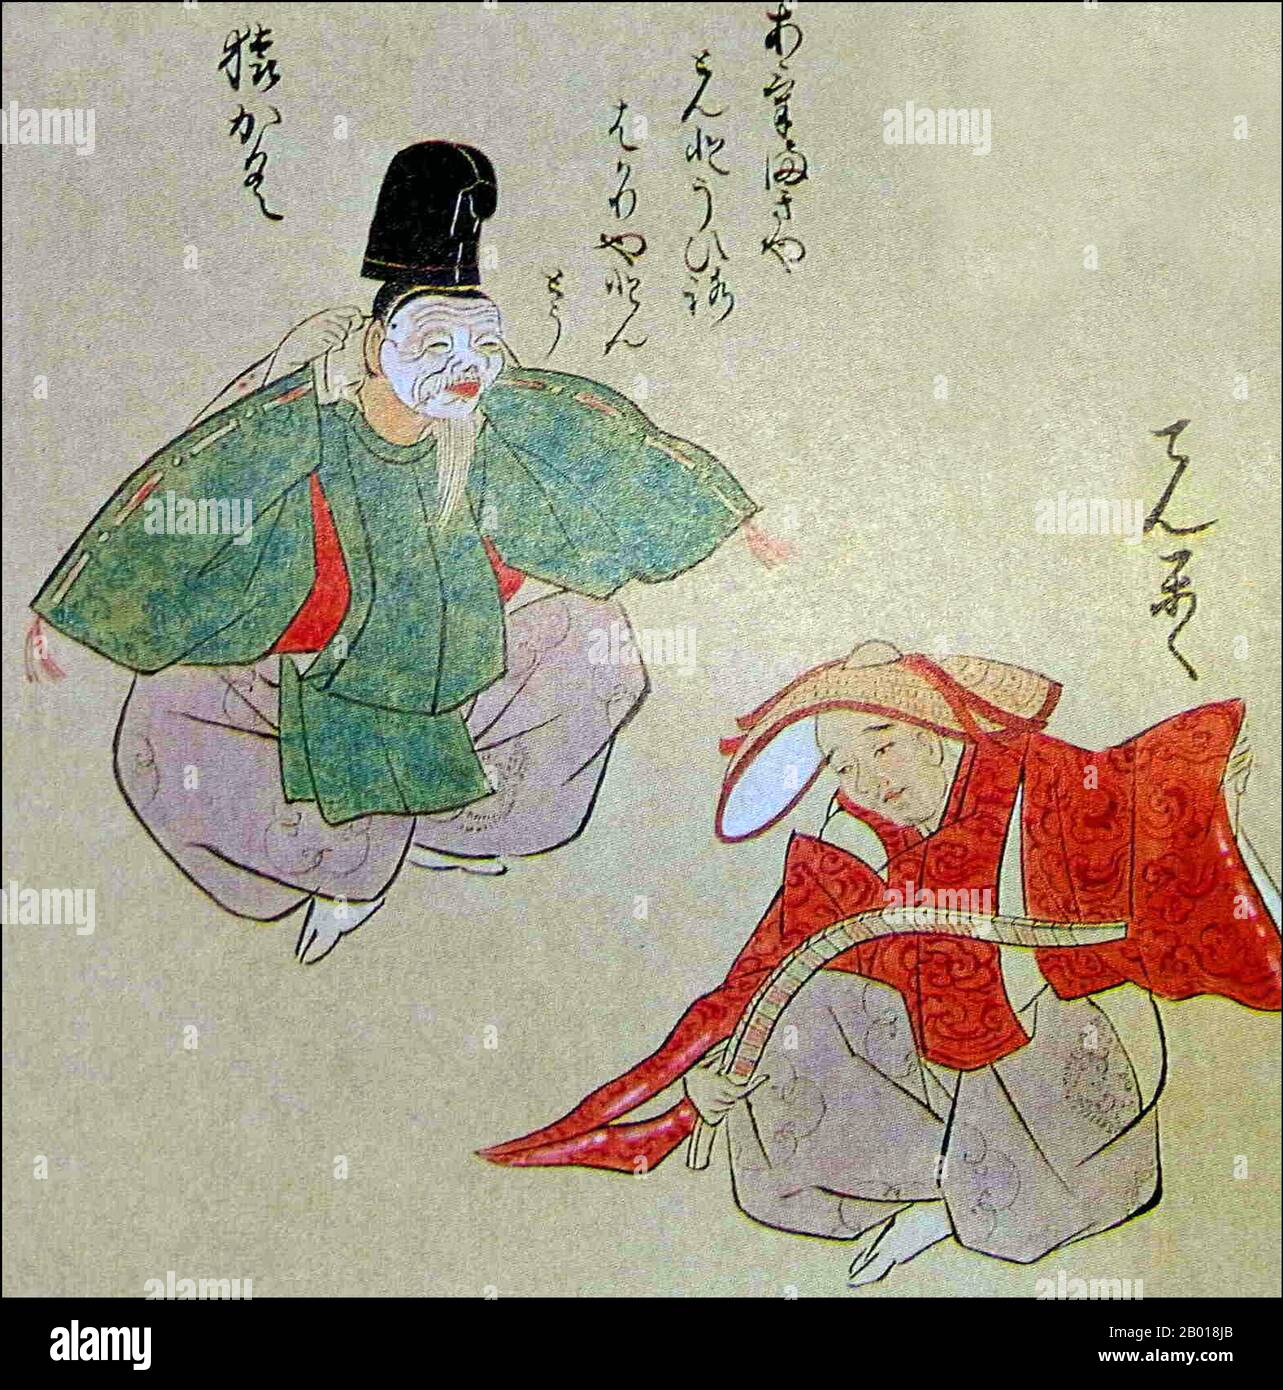 Japan: Sarugaku (links) und Dengaku (rechts) Darsteller. Aquarellmalerei, c. 18th Jahrhundert. Sarugaku, wörtlich „monkey music“, war eine Form des Theaters, das in Japan während des 11th. Bis 14th. Jahrhunderts populär war. Sie entstand aus „Sangaku“, einer Form der Unterhaltung, die an den modernen Zirkus erinnert, und bestand hauptsächlich aus Akrobatik, Jonglieren und Pantomime, manchmal kombiniert mit Trommeltanz. Sie kam im 8th. Jahrhundert von China nach Japan und mischte sich dort mit indigenen Traditionen, insbesondere den Erntefeiern von Dengaku. Stockfoto